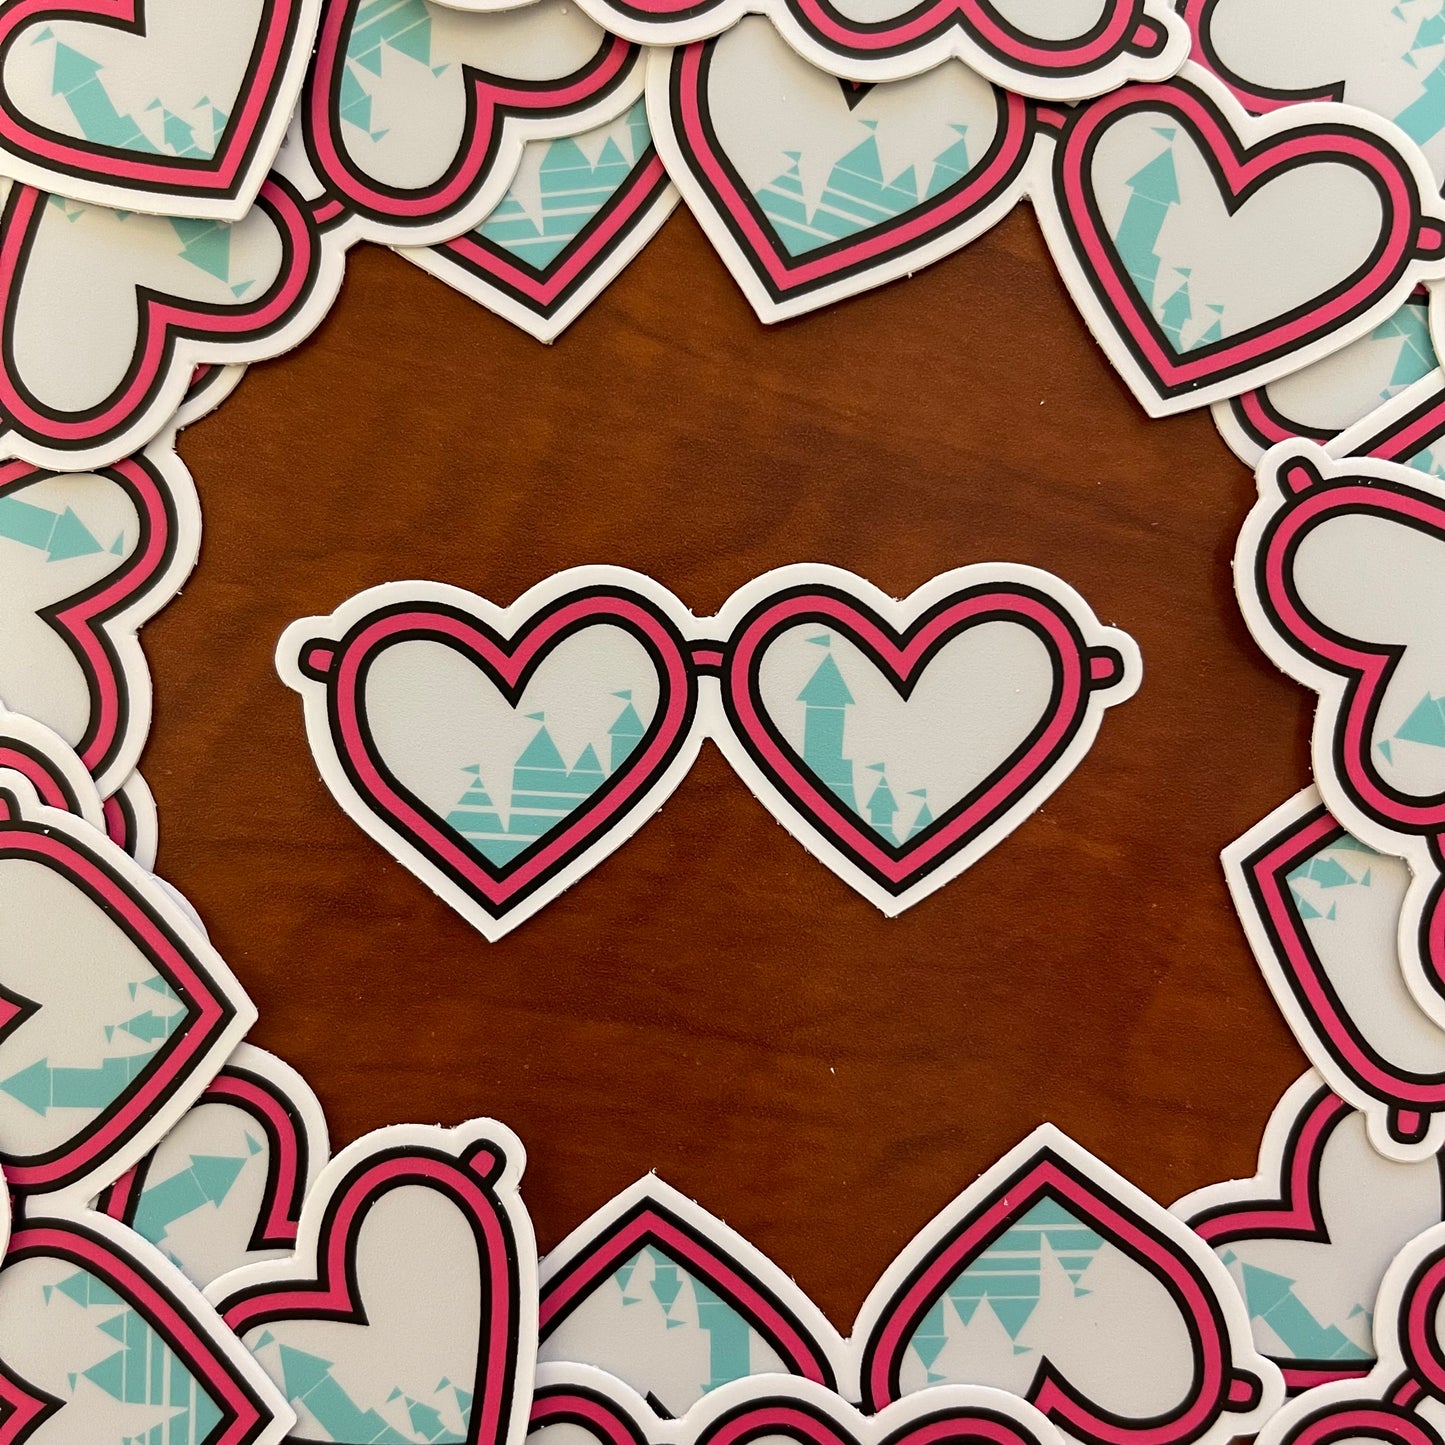 Magic Heart Sunnies 3" sticker